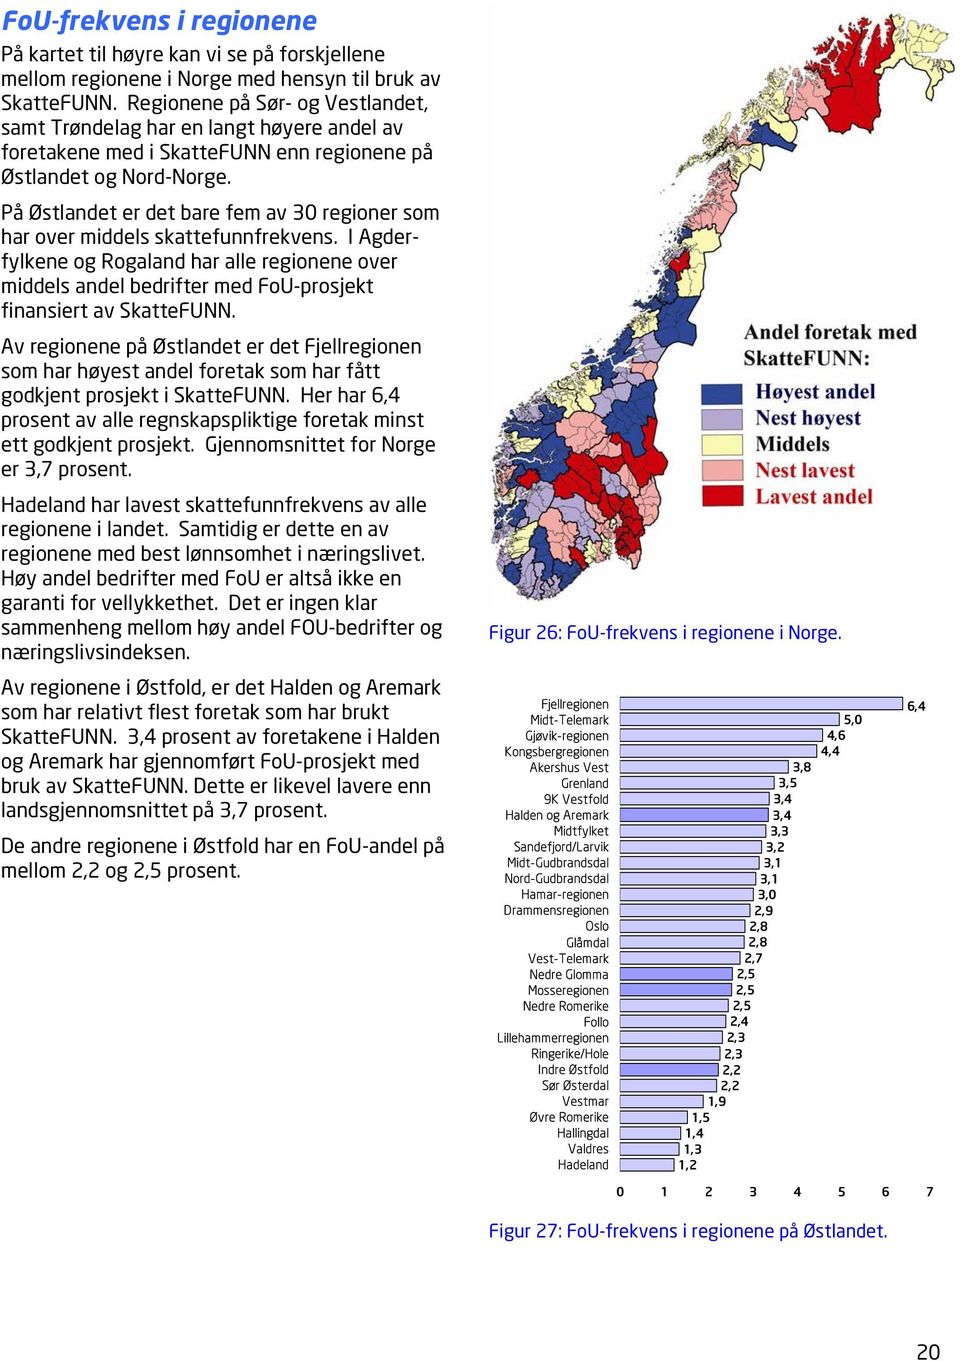 På Østlandet er det bare fem av 30 regioner som har over middels skattefunnfrekvens.